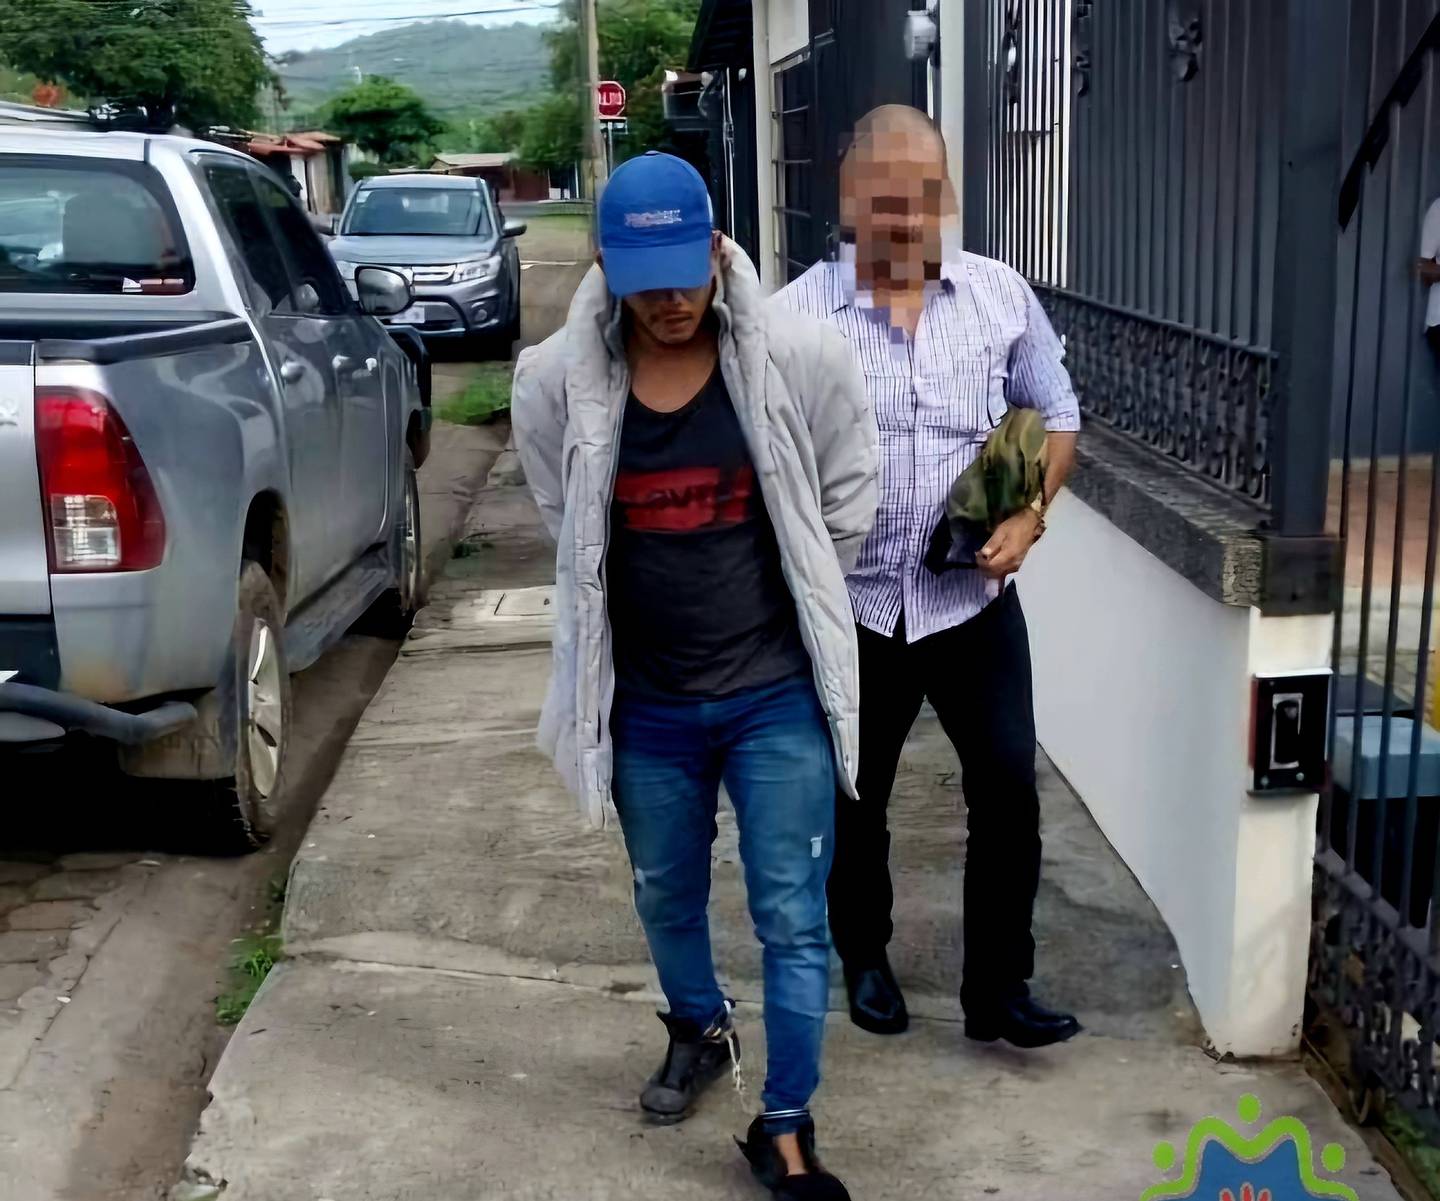 El sospechoso cayó en Cañas Guanacaste, donde la Fuerza Pública lo entregó al OIJ para las diligencias del caso. Foto: Cortesía Revista Guanacasteca.